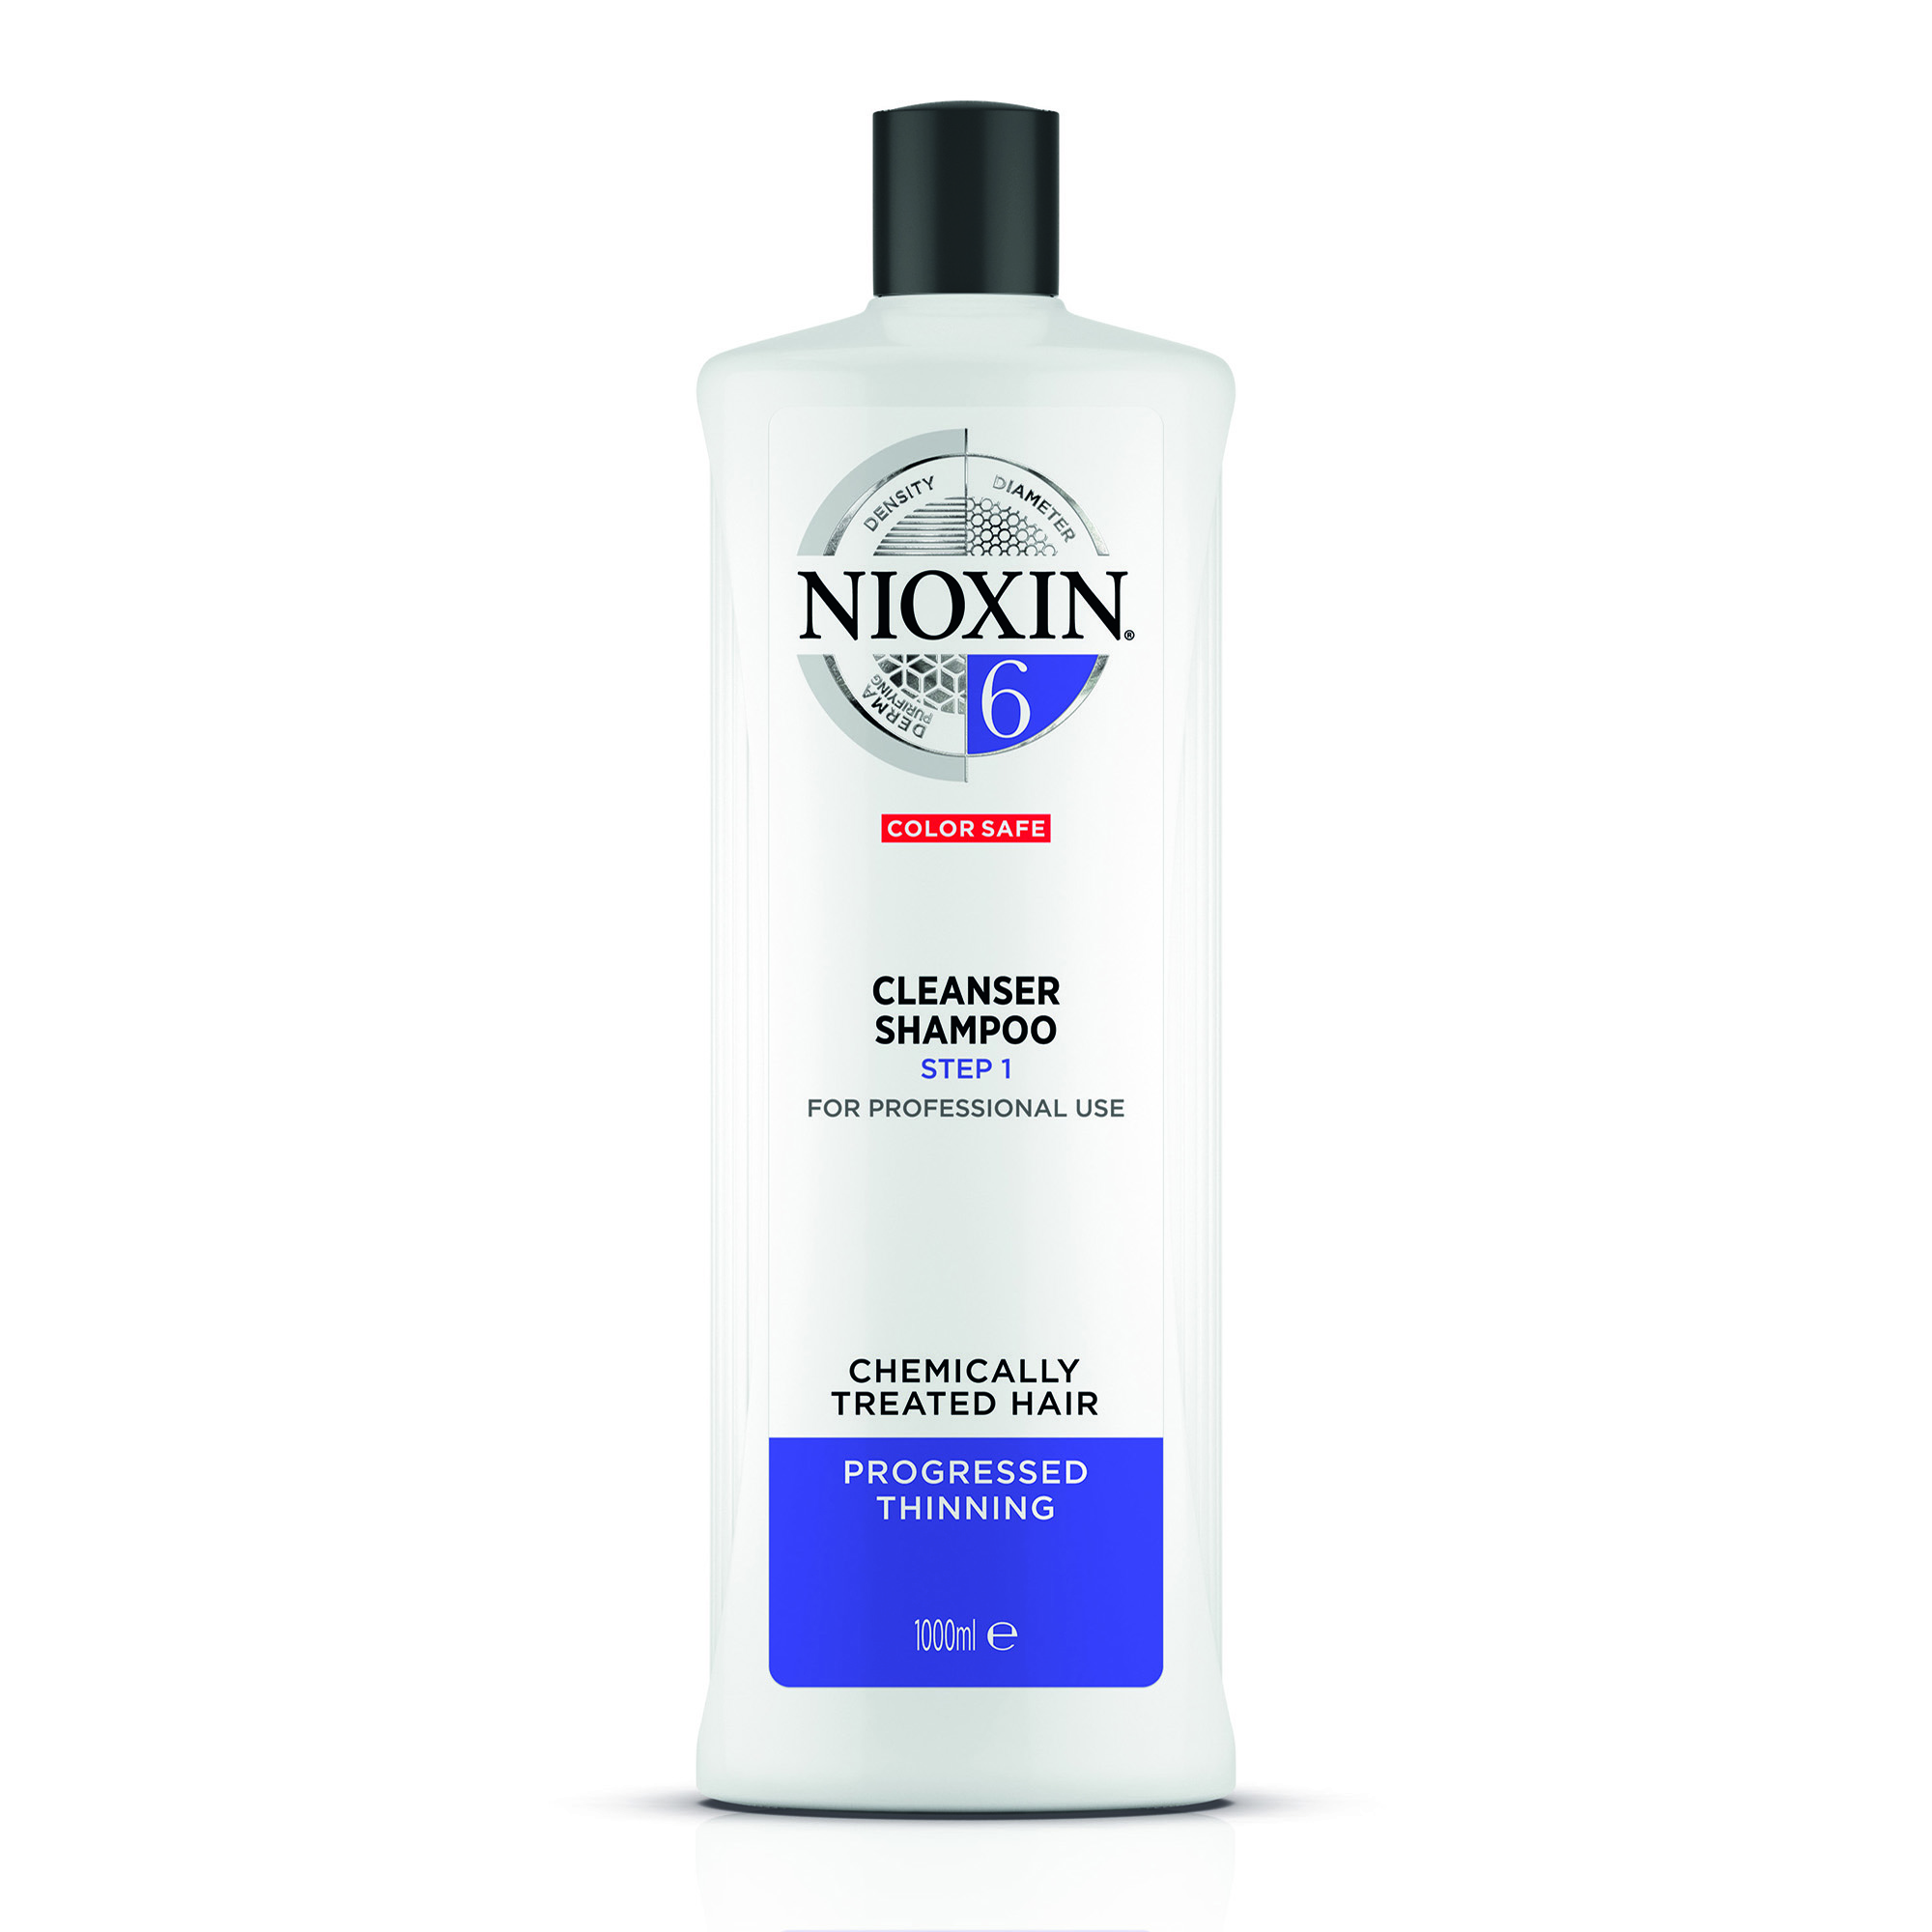 NIOXIN Шампунь очищающий для заметно редеющих волос, Система 6, 1000 мл очищающий шампунь система 6 5255 1000 мл